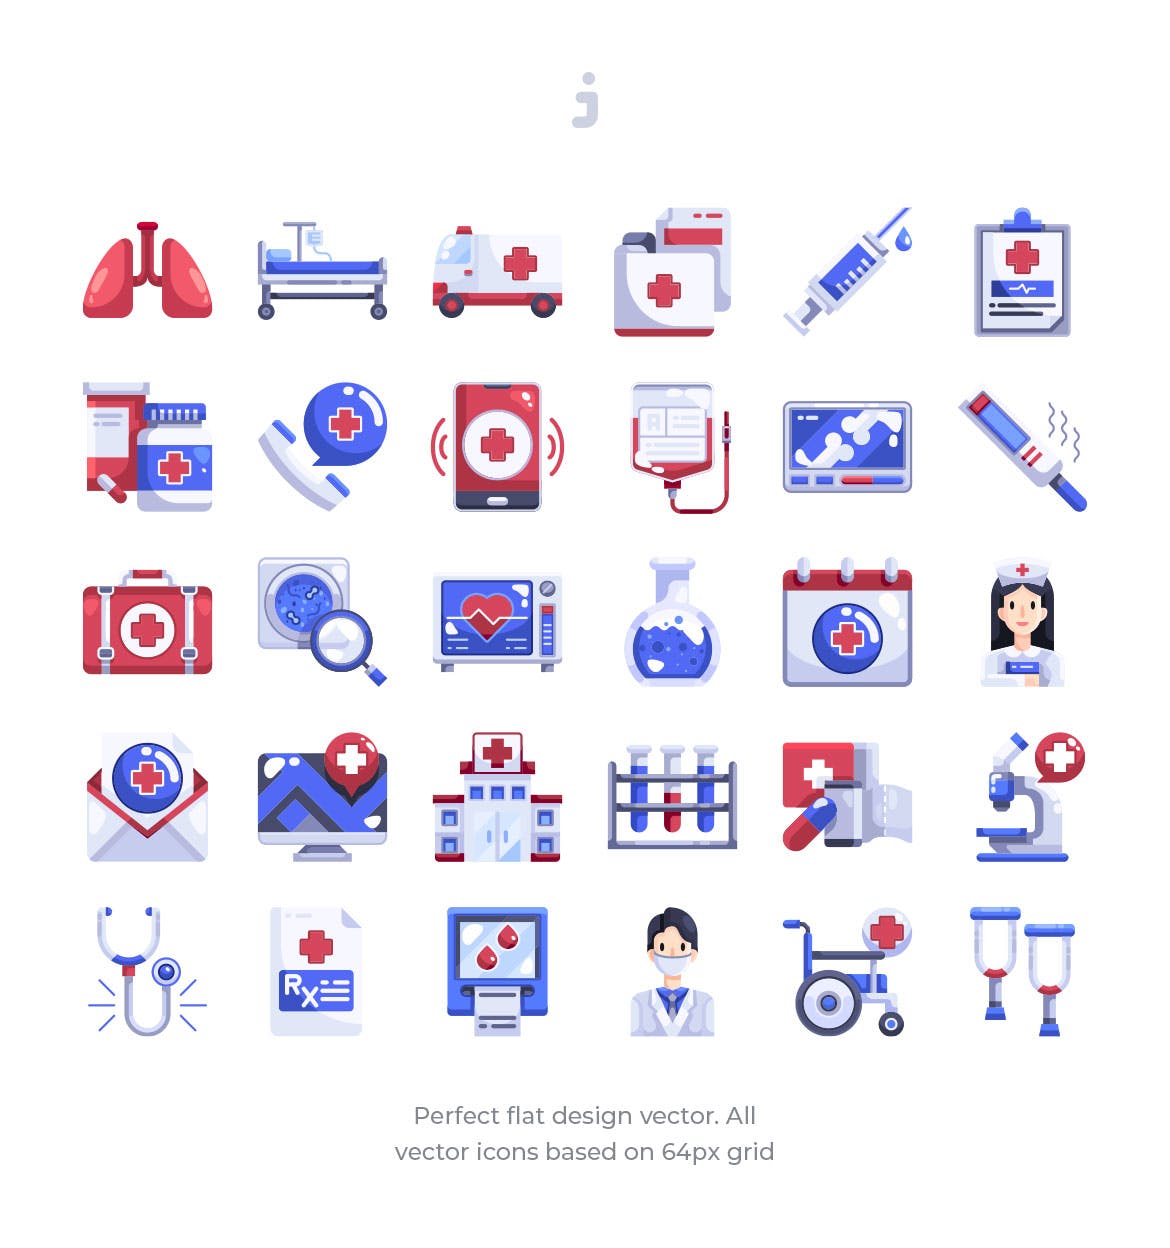 30枚扁平化设计风格医院医疗矢量图标 30 Hospital Element Icons – Flat插图(1)